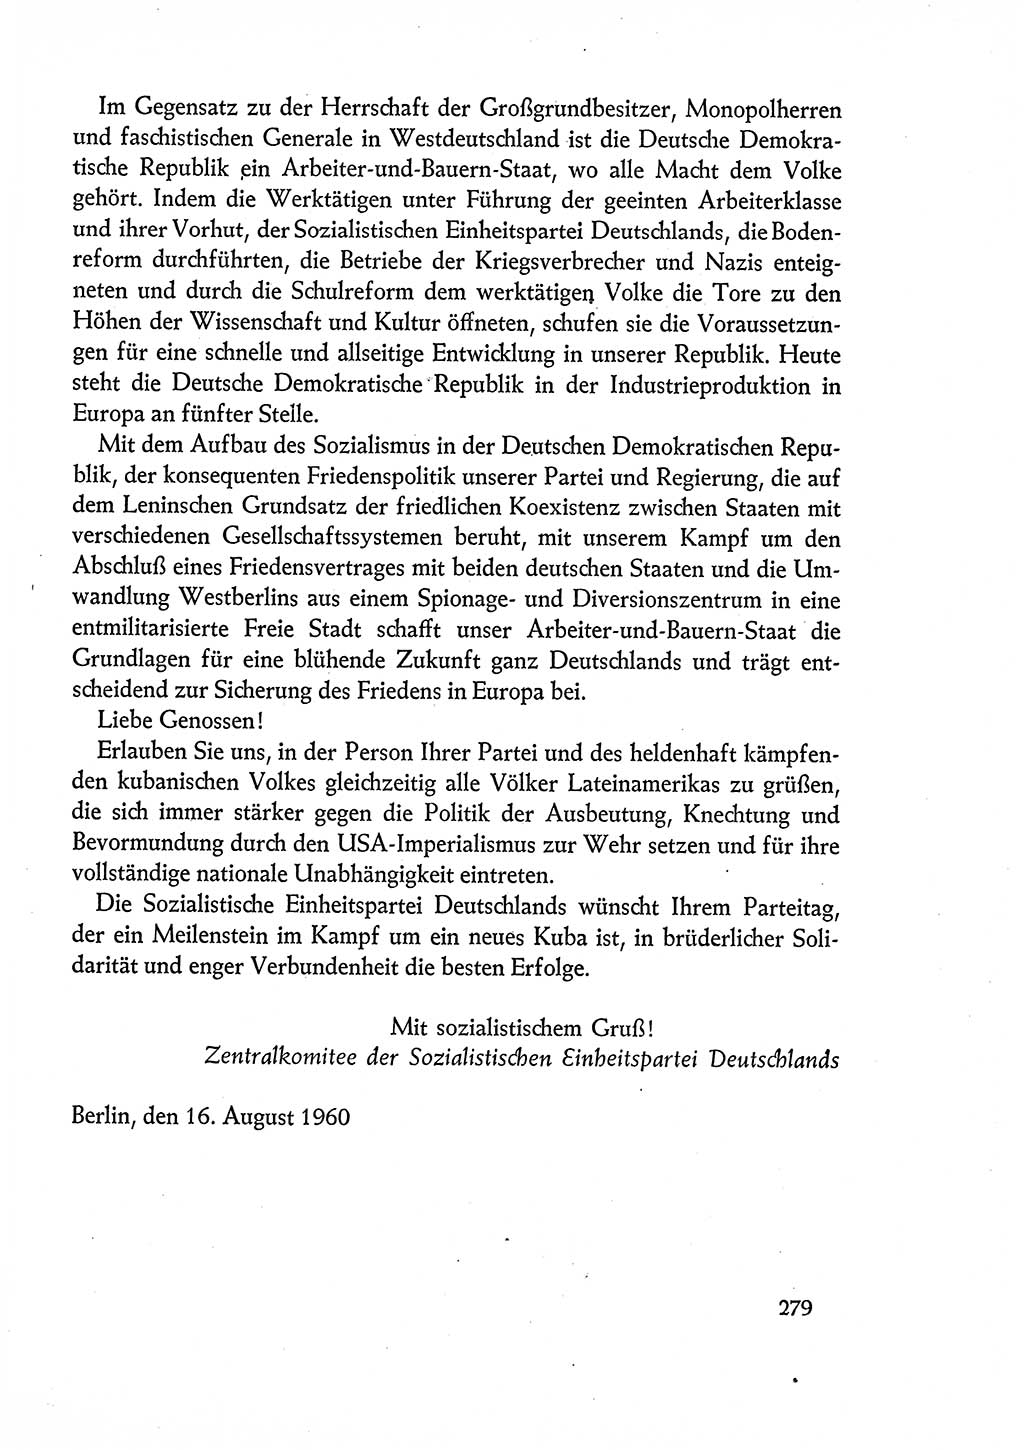 Dokumente der Sozialistischen Einheitspartei Deutschlands (SED) [Deutsche Demokratische Republik (DDR)] 1960-1961, Seite 279 (Dok. SED DDR 1960-1961, S. 279)